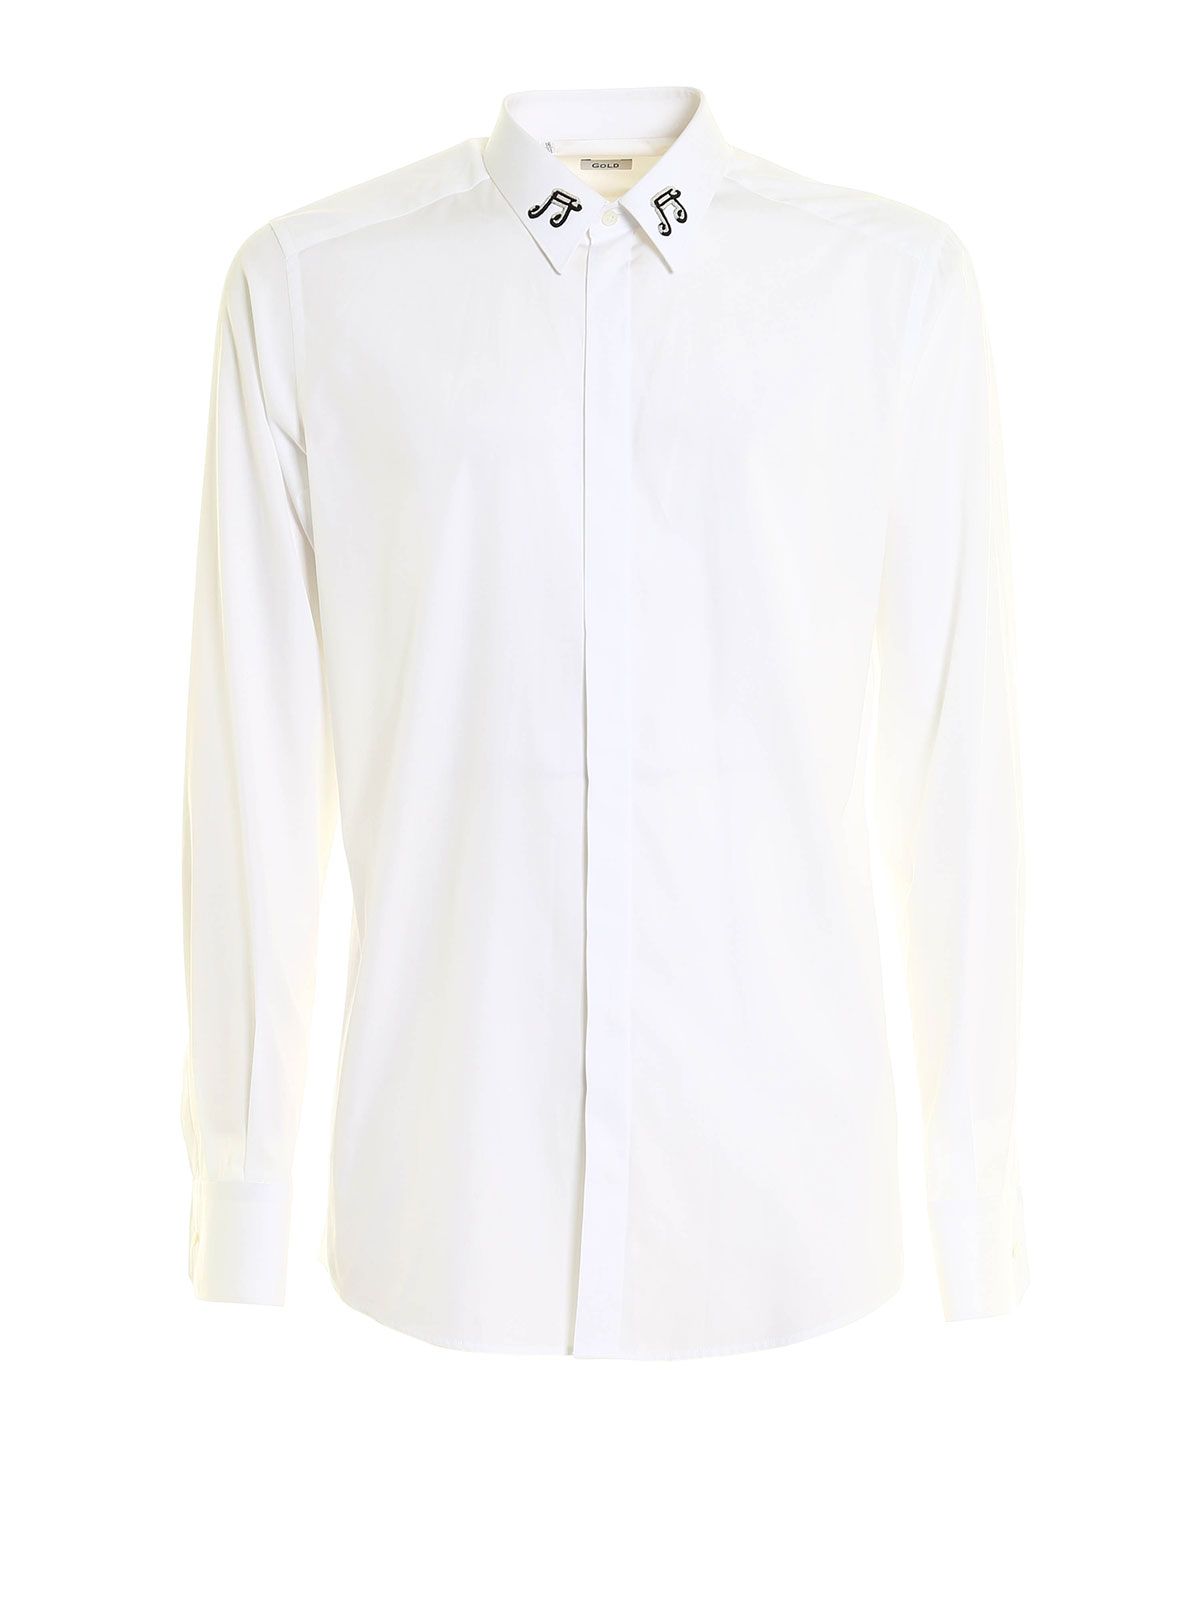 Shirts Dolce & Gabbana - Music inspired cotton shirt 